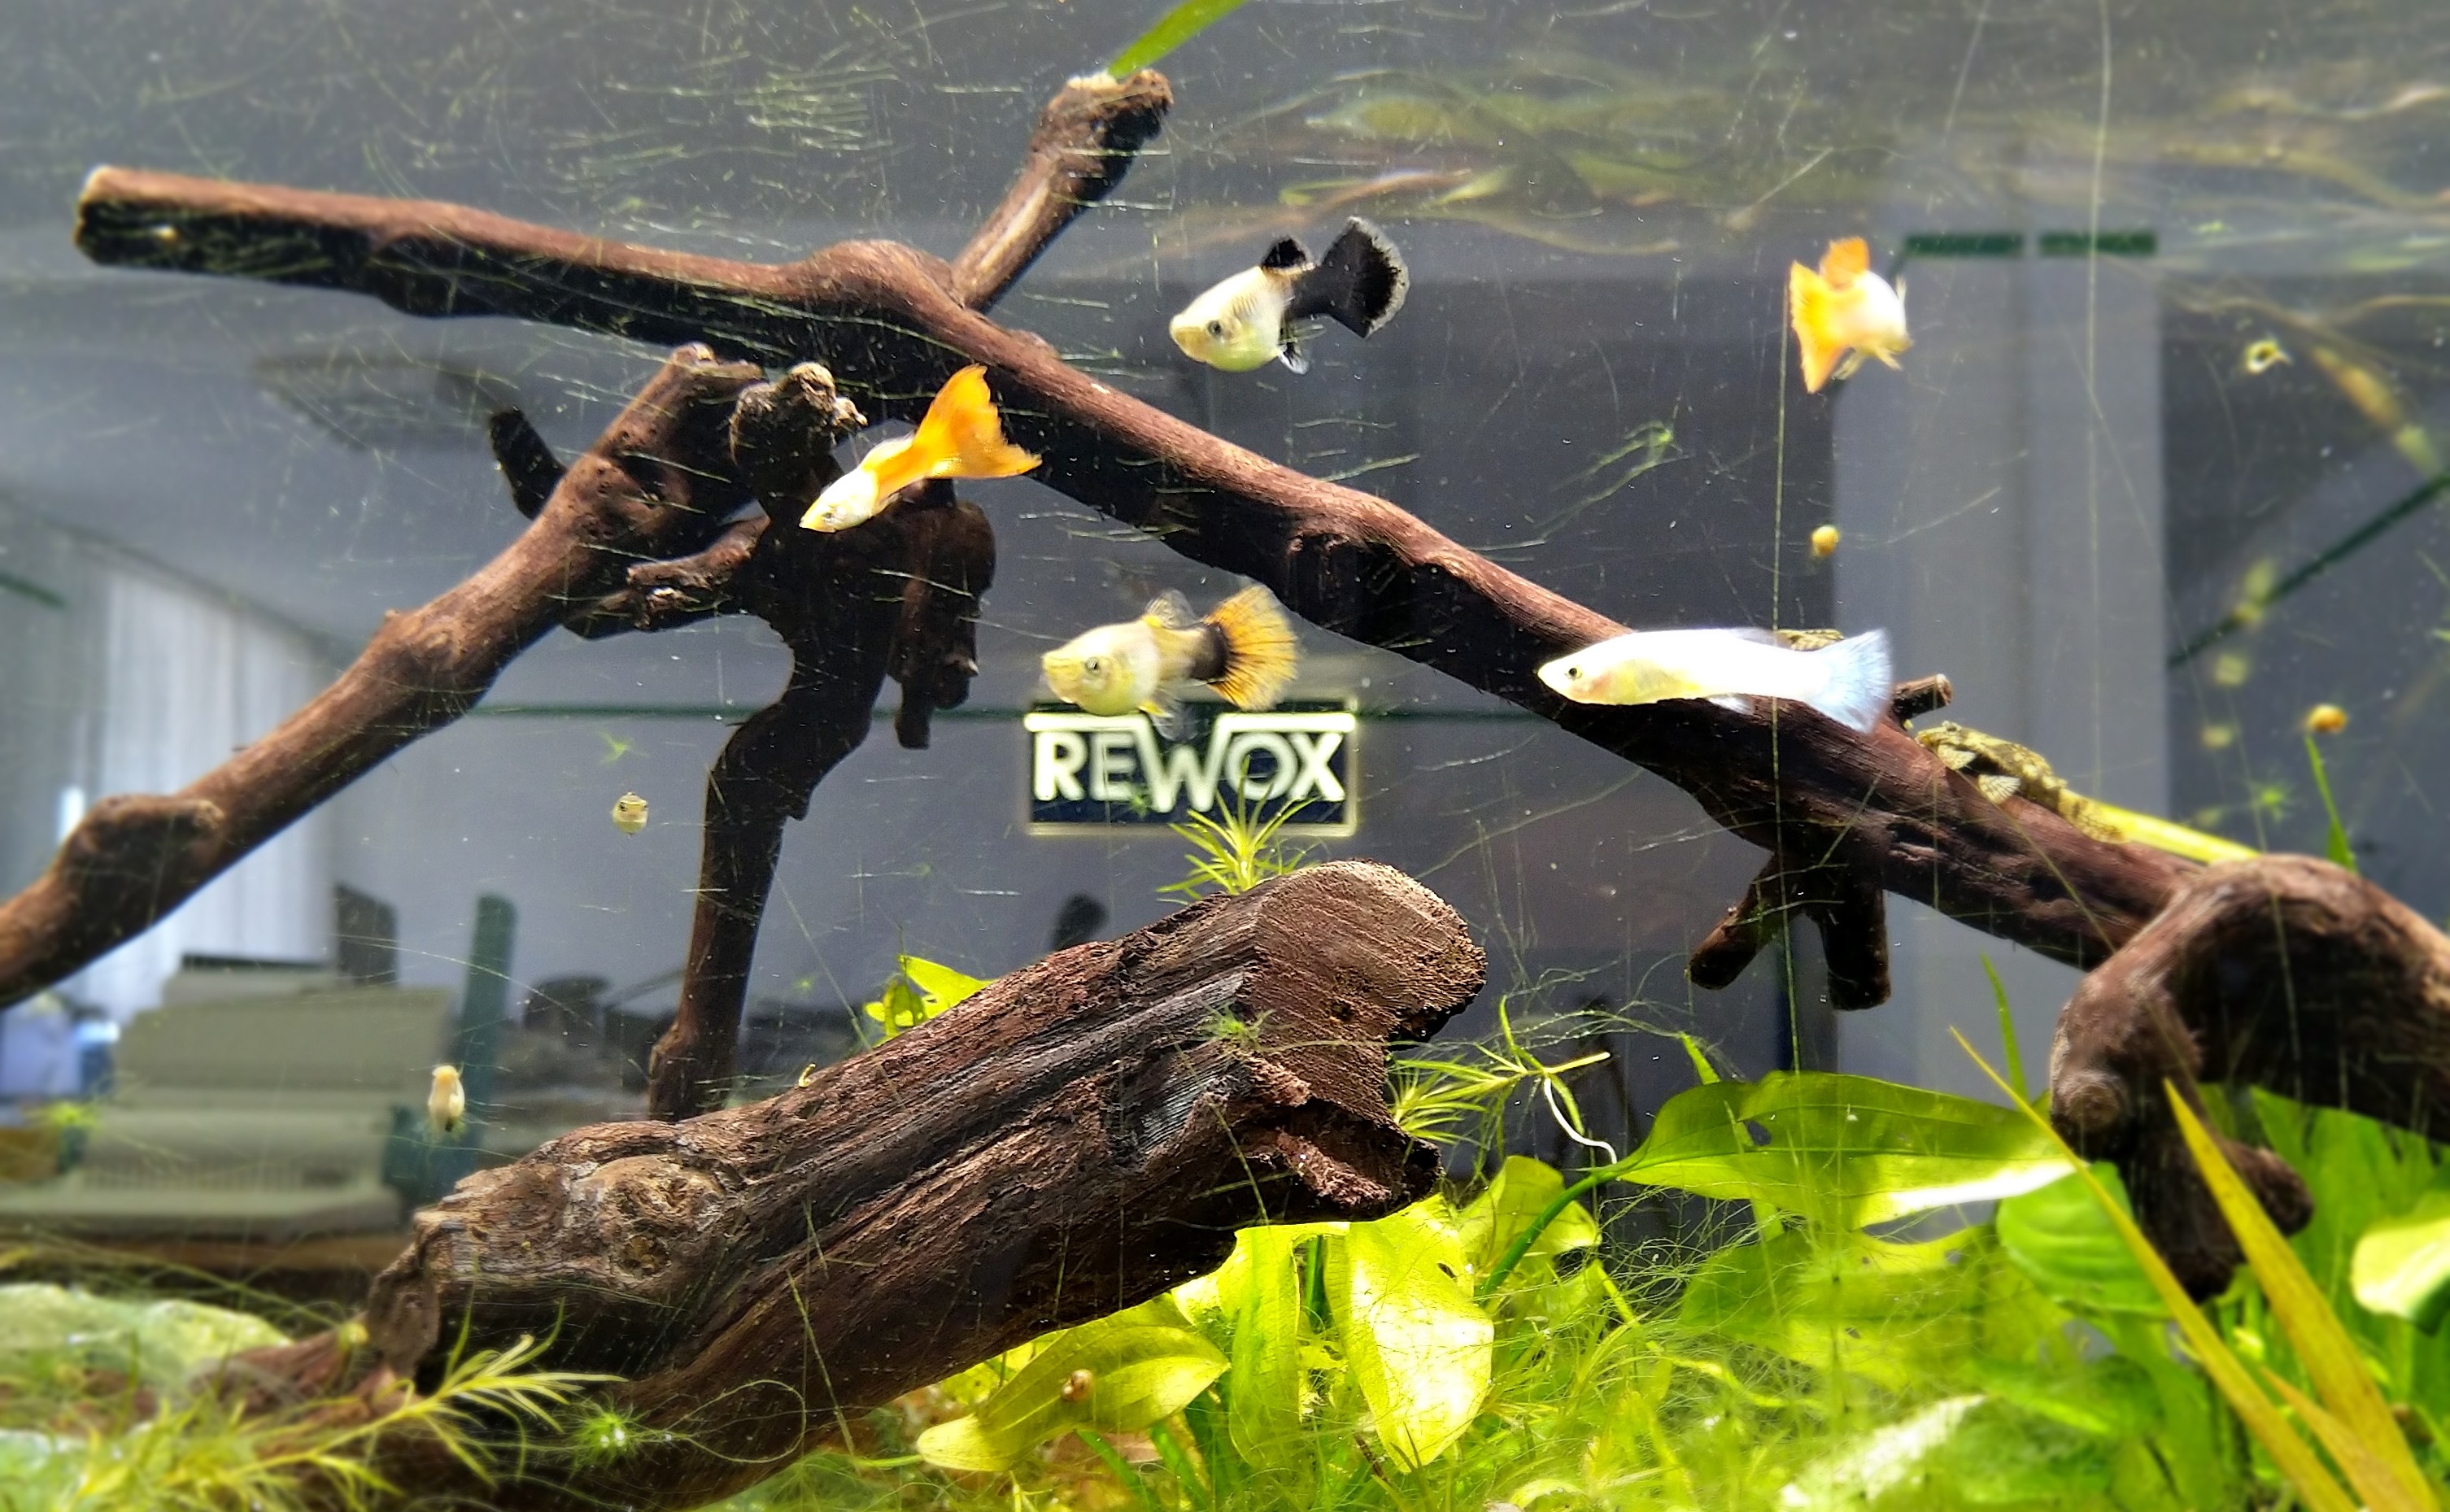 rewox iroda akvárium